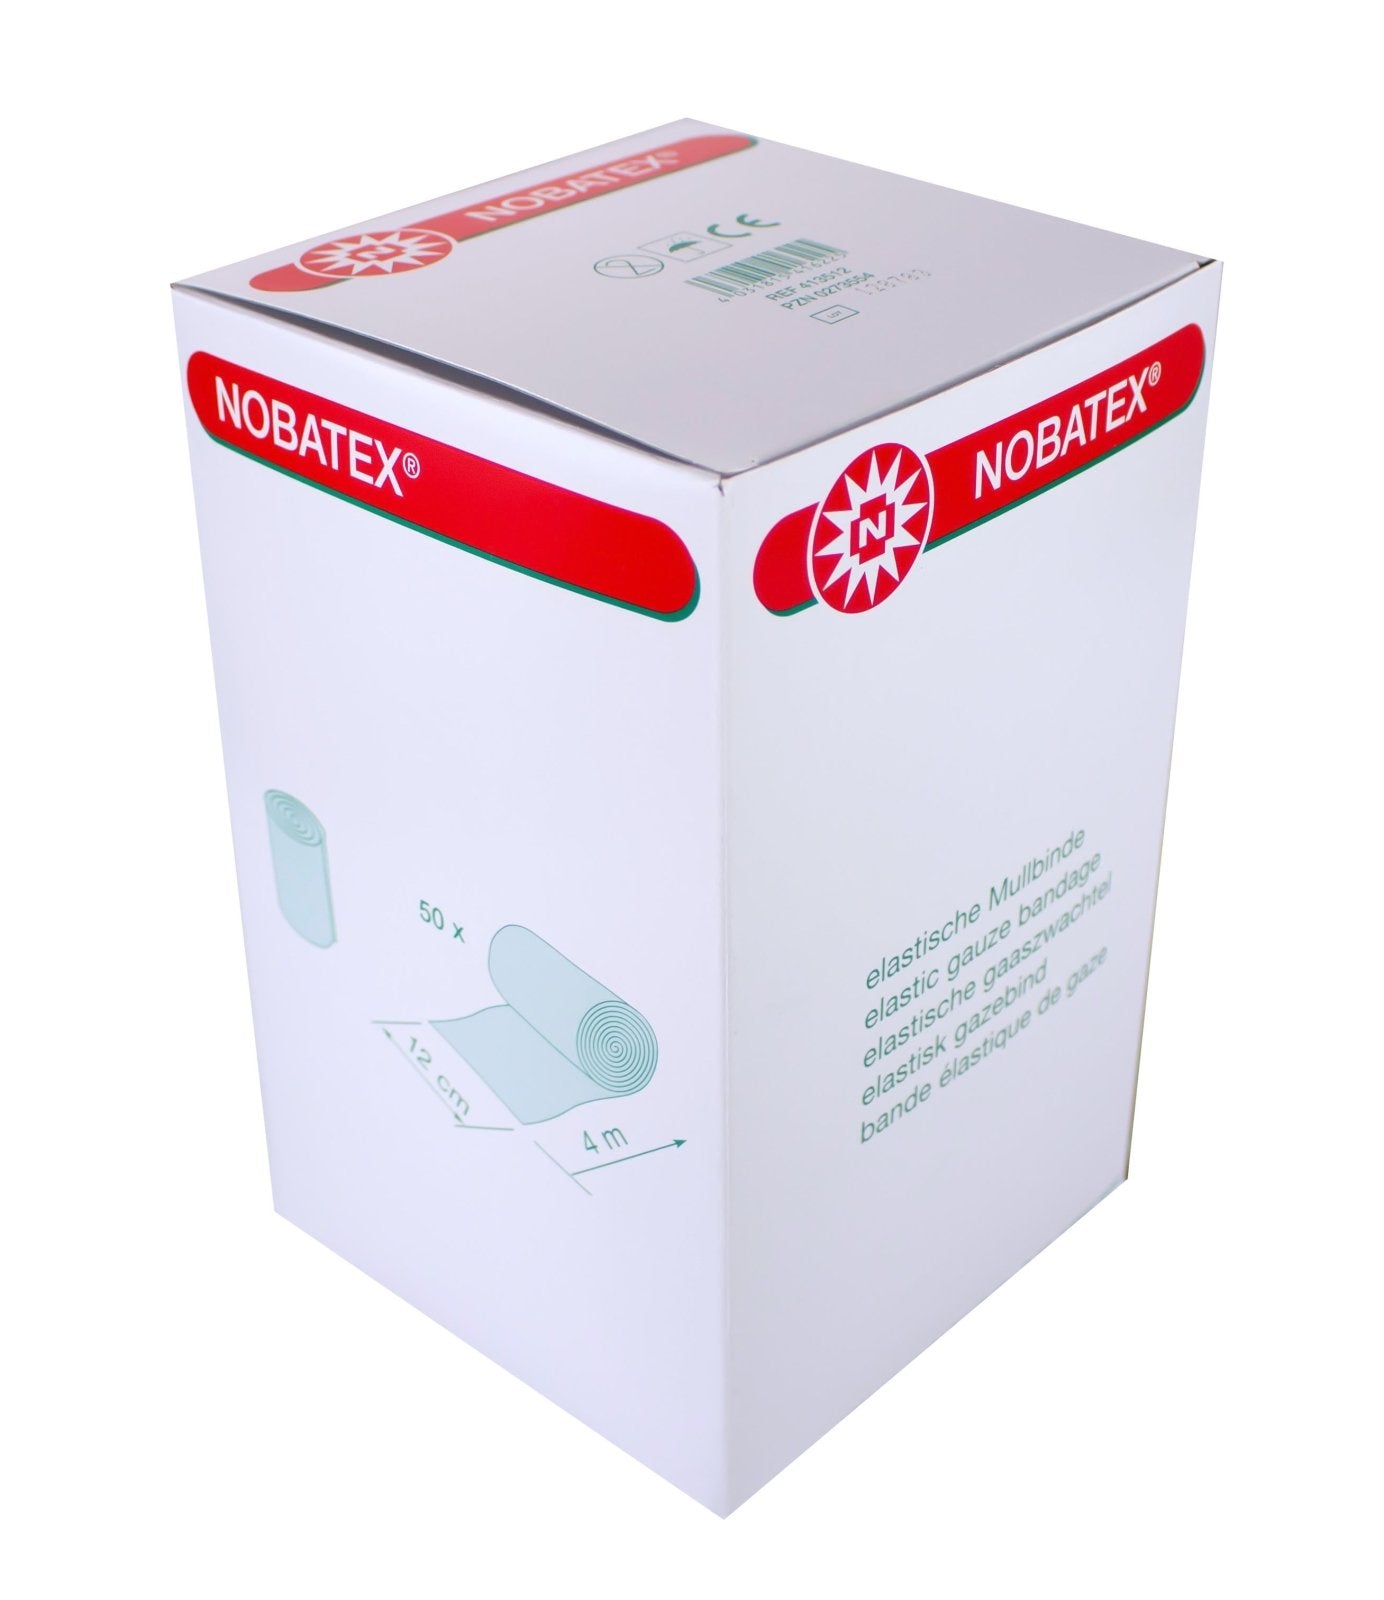 Noba Nobatex elastische Fixierbinden Großverbraucherpackung 50 Stück